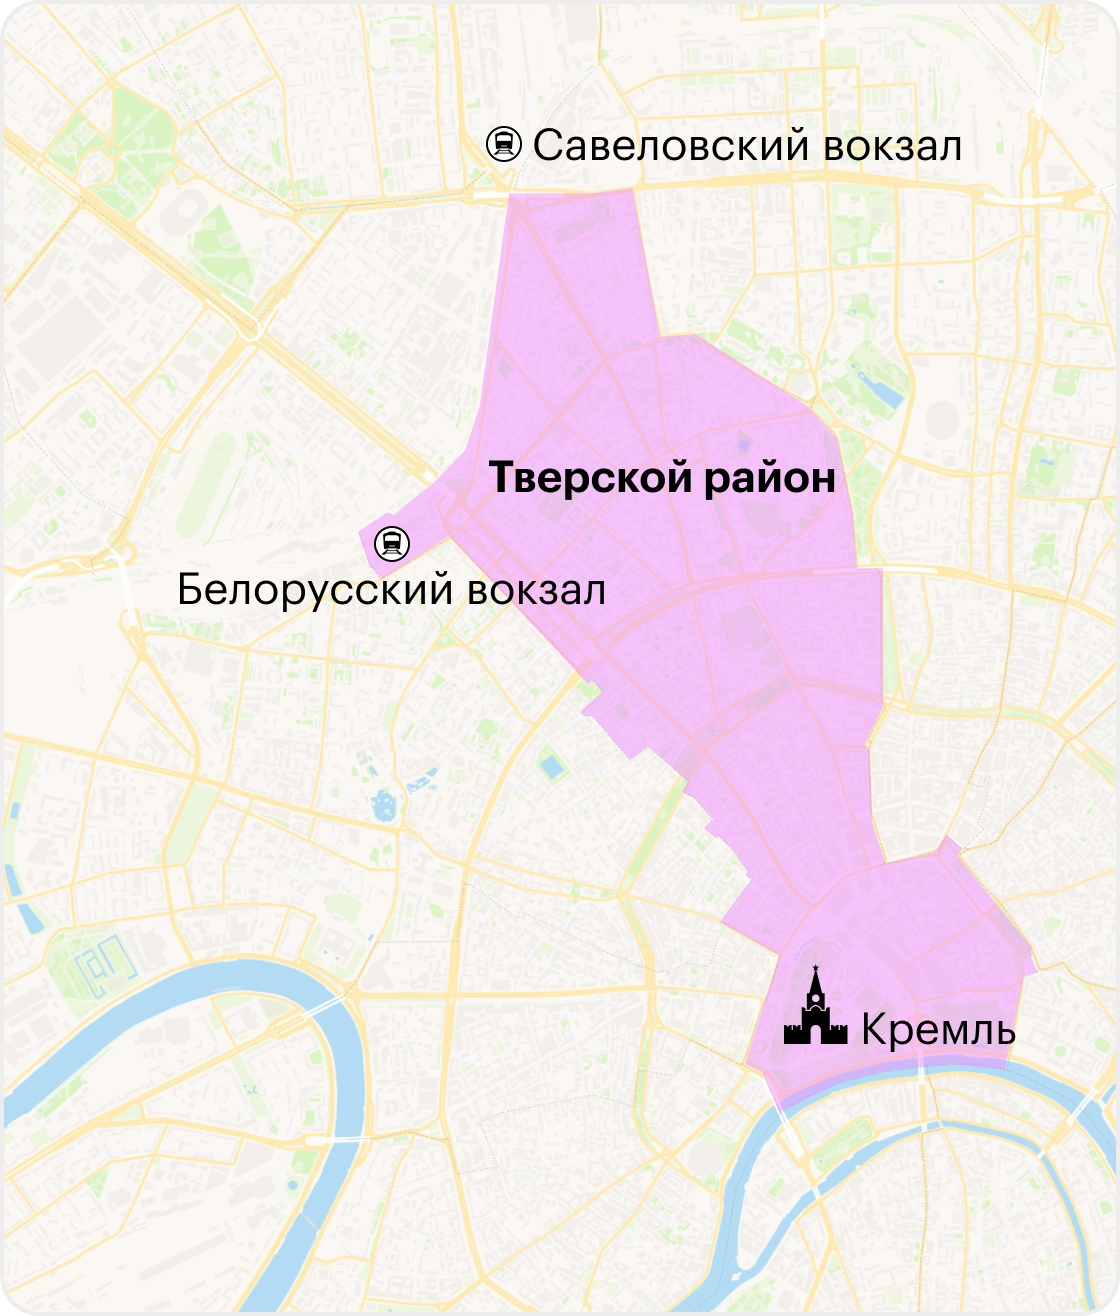 Тверской район — самый центр Москвы, в него входит даже Кремль. Оттуда он простирается на северо-восток и доходит до Савеловского вокзала